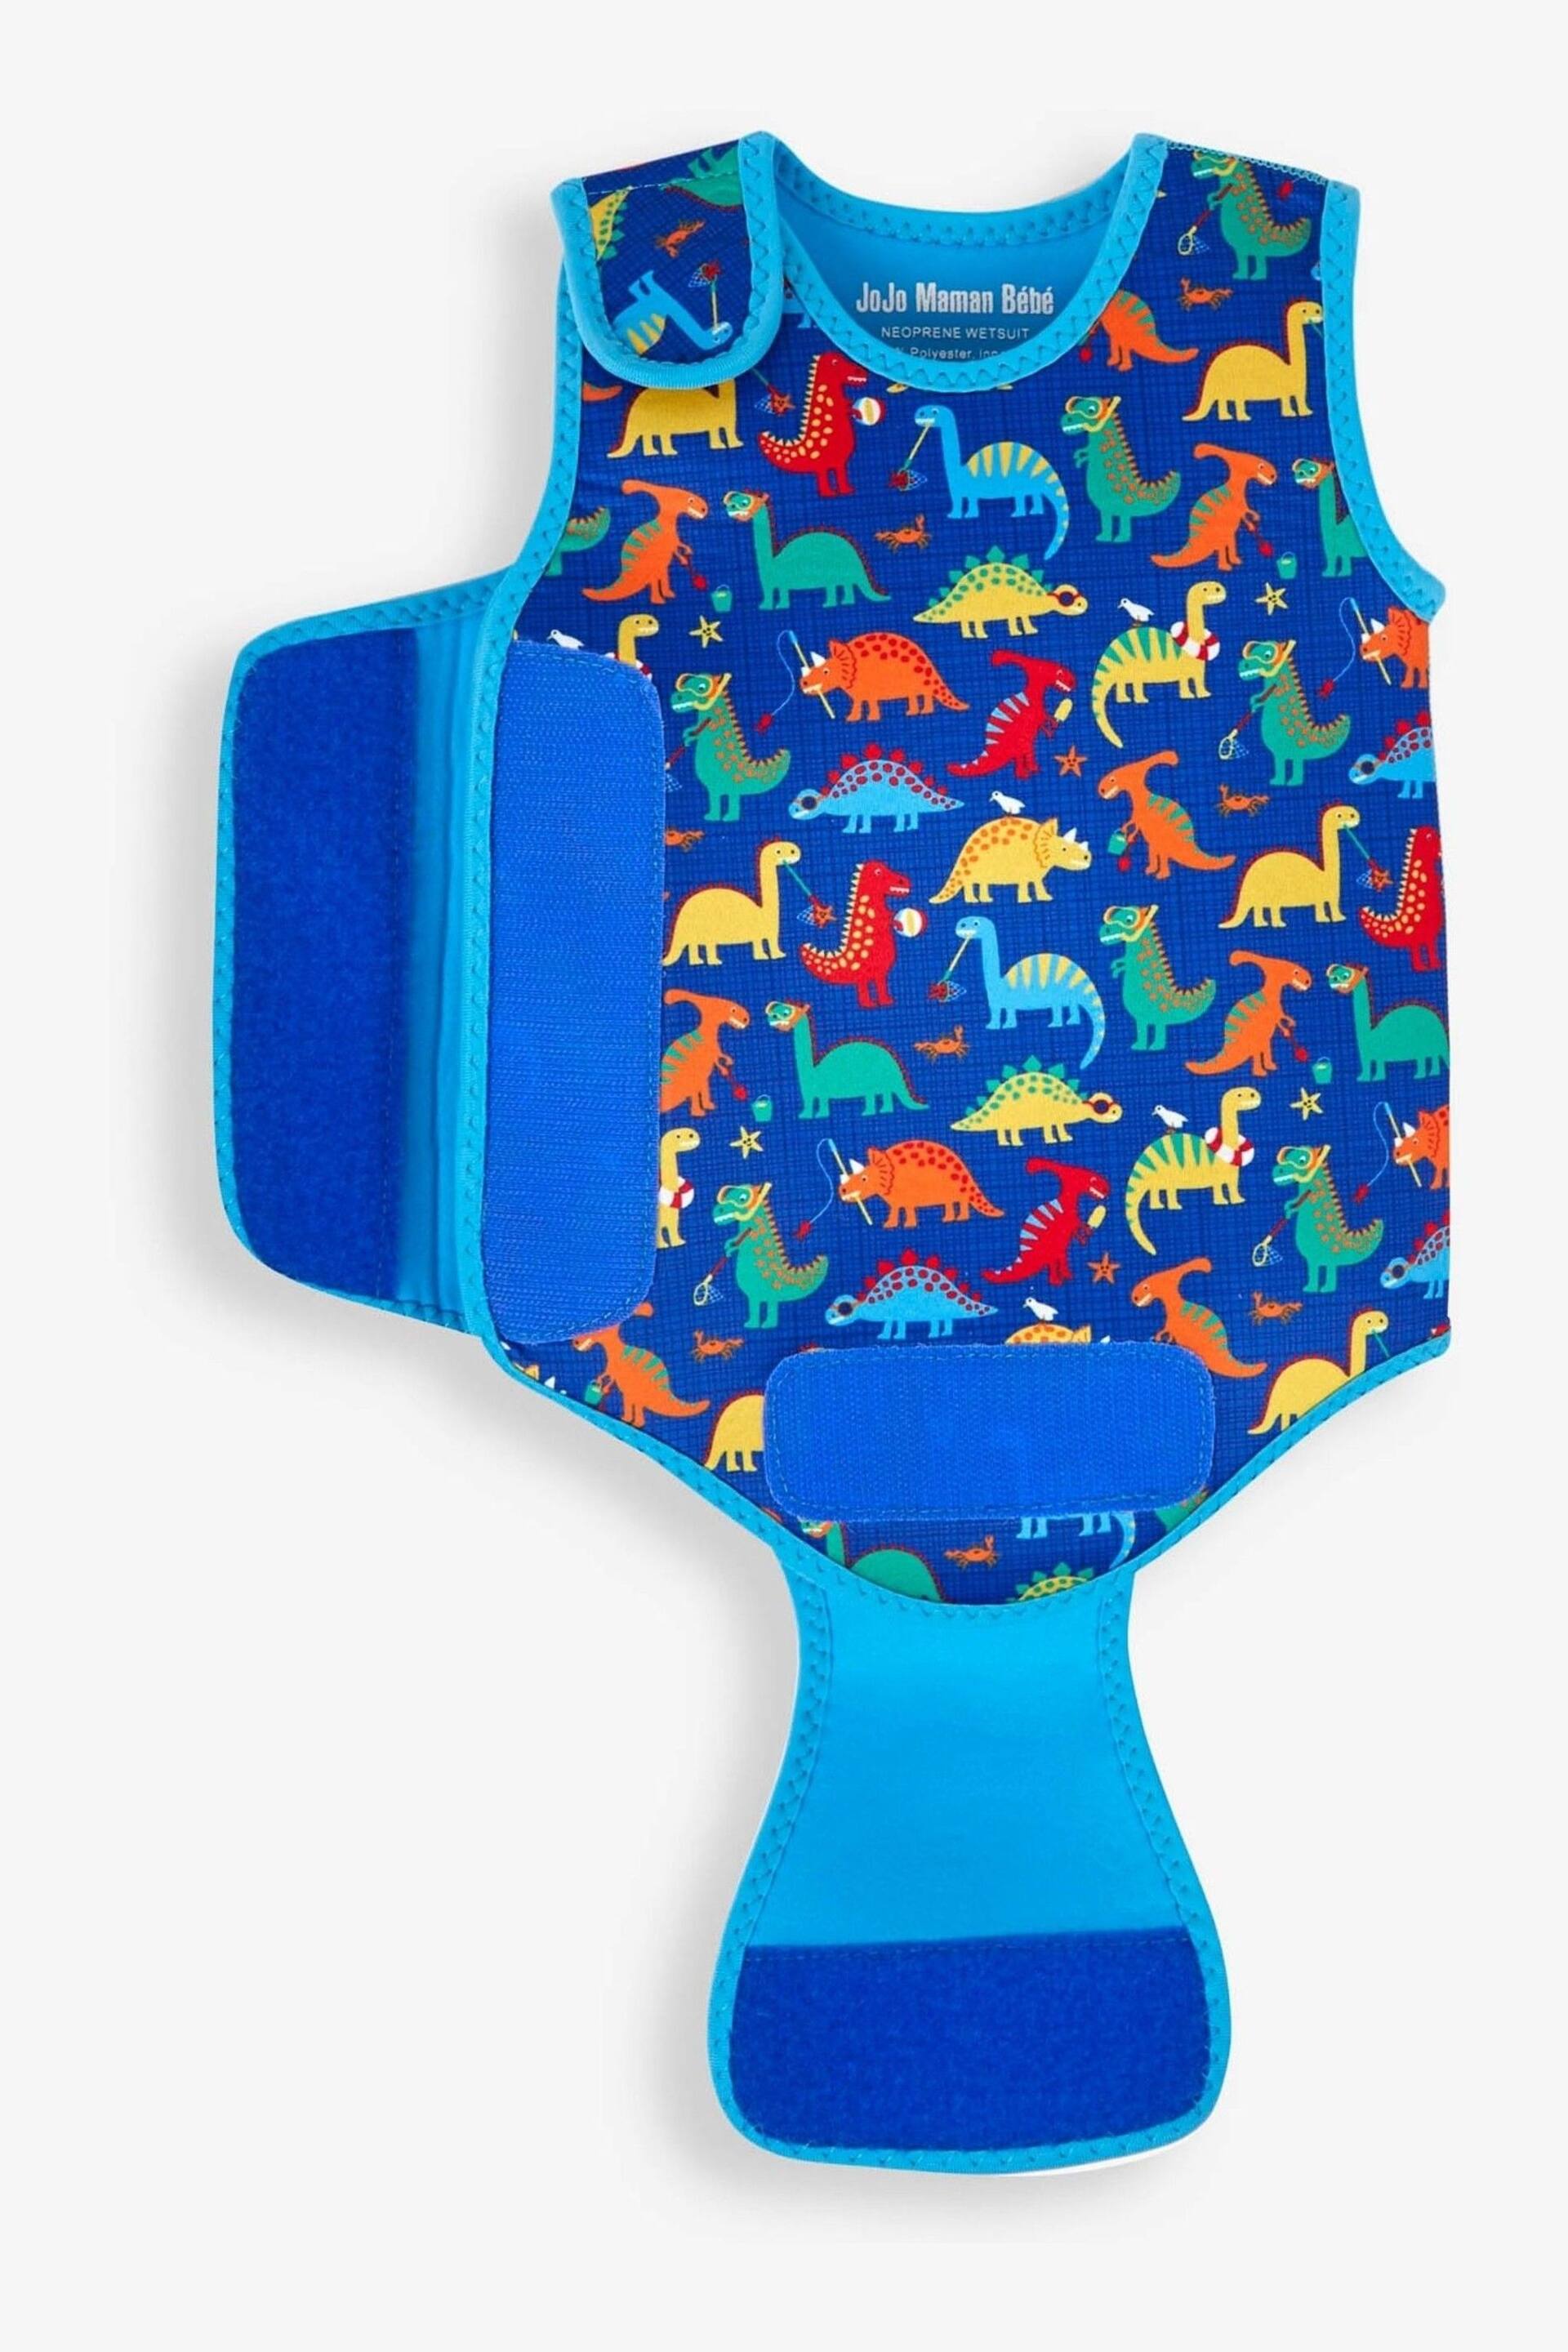 JoJo Maman Bébé Blue Dino Print Baby Wetsuit - Image 4 of 4